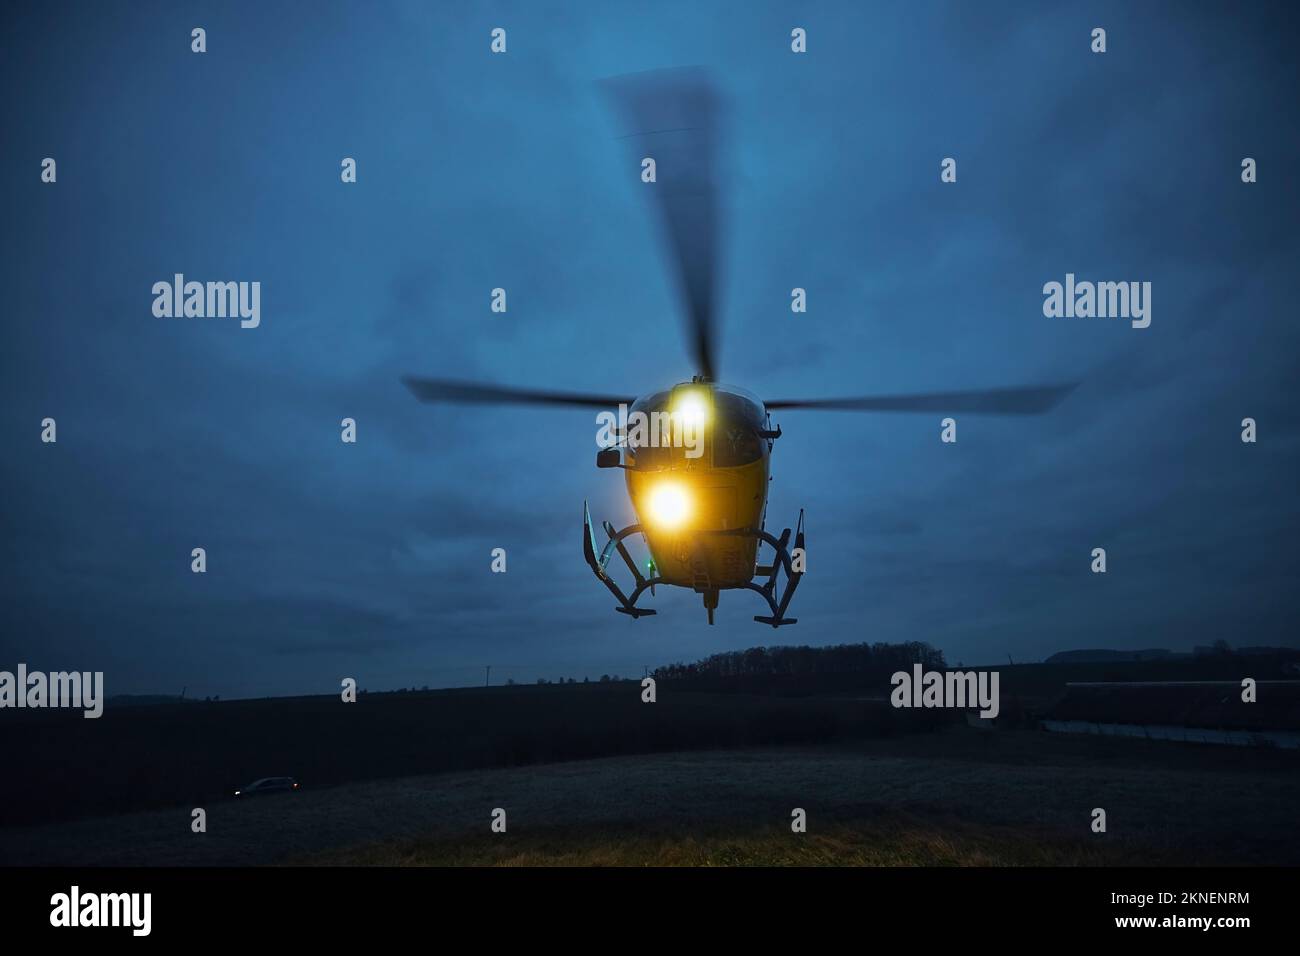 Elicottero volante di servizio medico di emergenza durante il decollo dal prato al crepuscolo. Temi di salvataggio, aiuto e speranza. Foto Stock